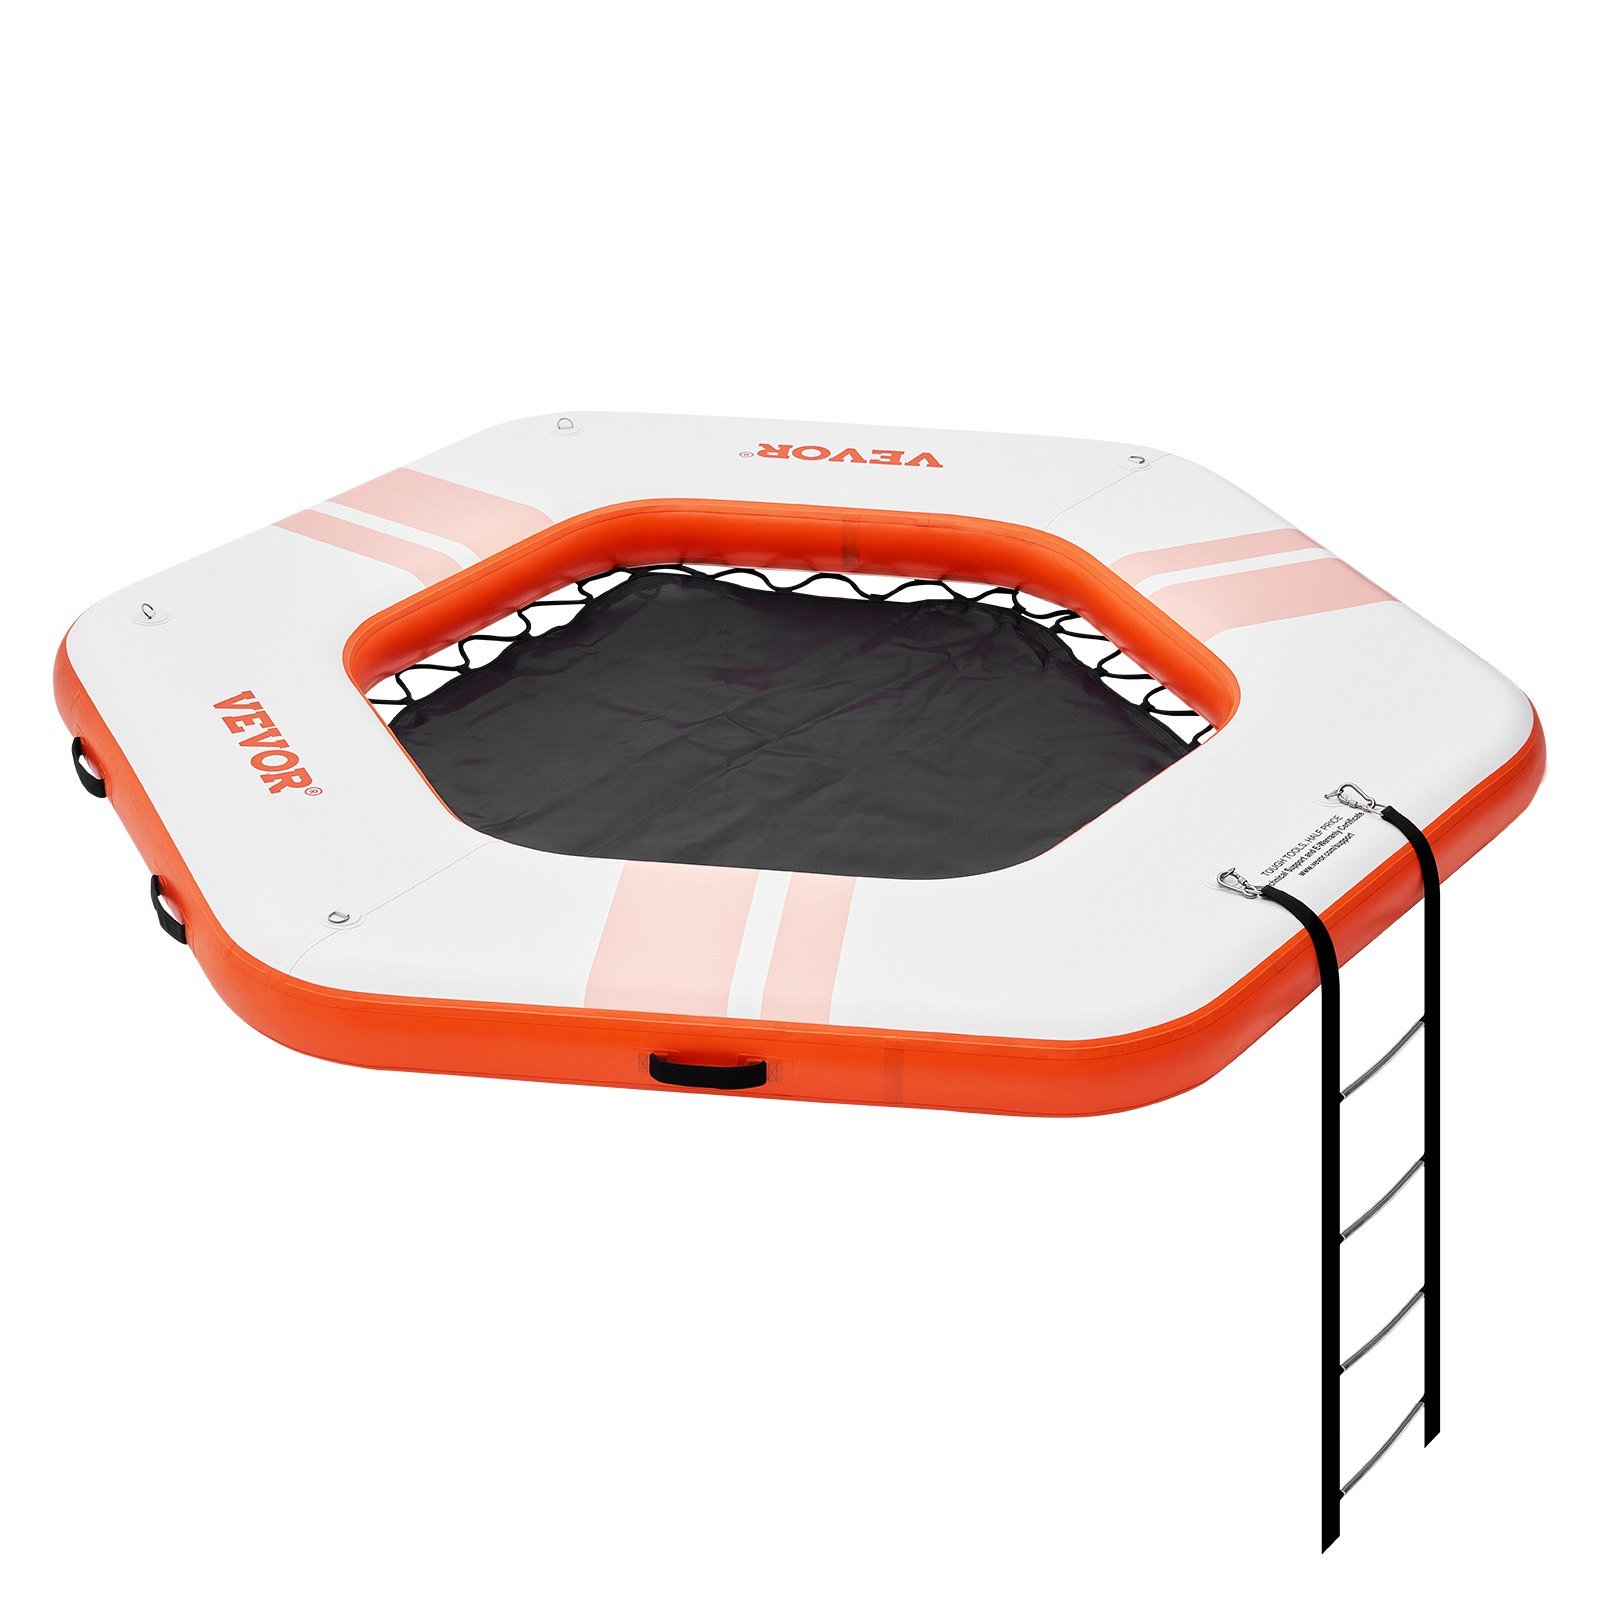 VEVOR Inflatable Floating Dock, Ã¸8.5FT Inflatable Dock Platform with Ã¸5FT Trampoline Mesh Pool, No